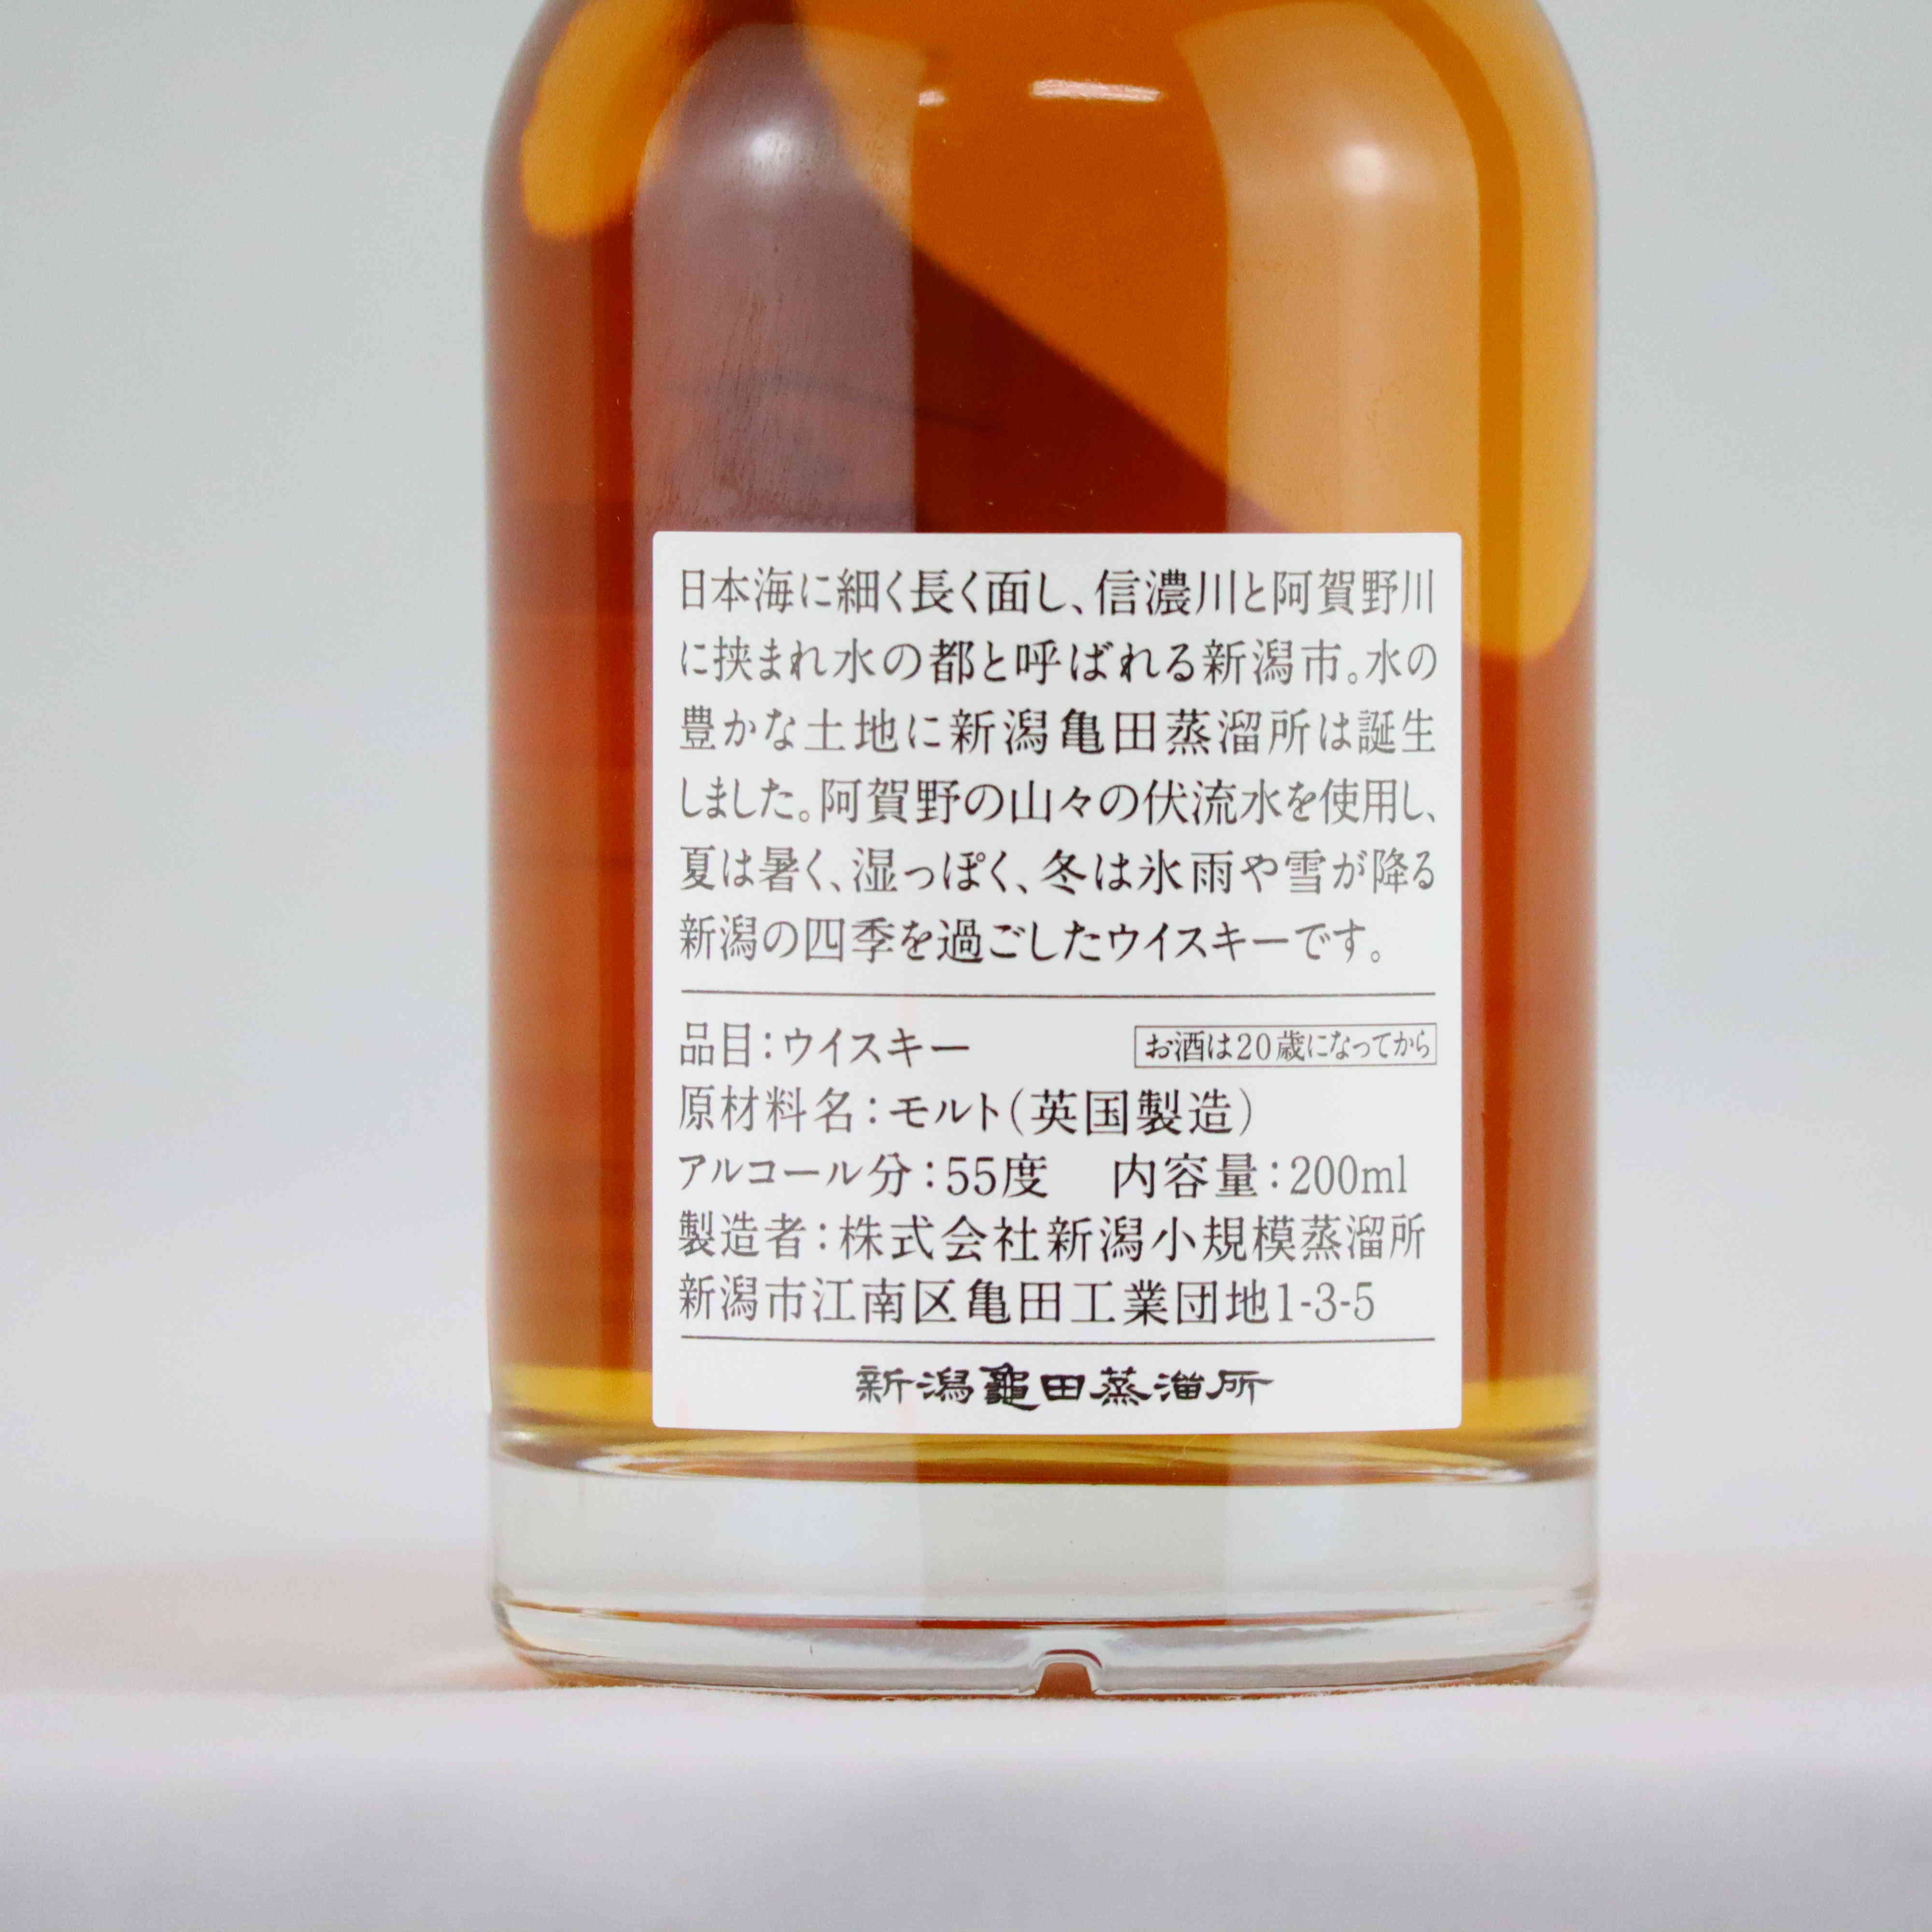 新潟県 亀田蒸溜所 ウイスキー ニューポット - 酒